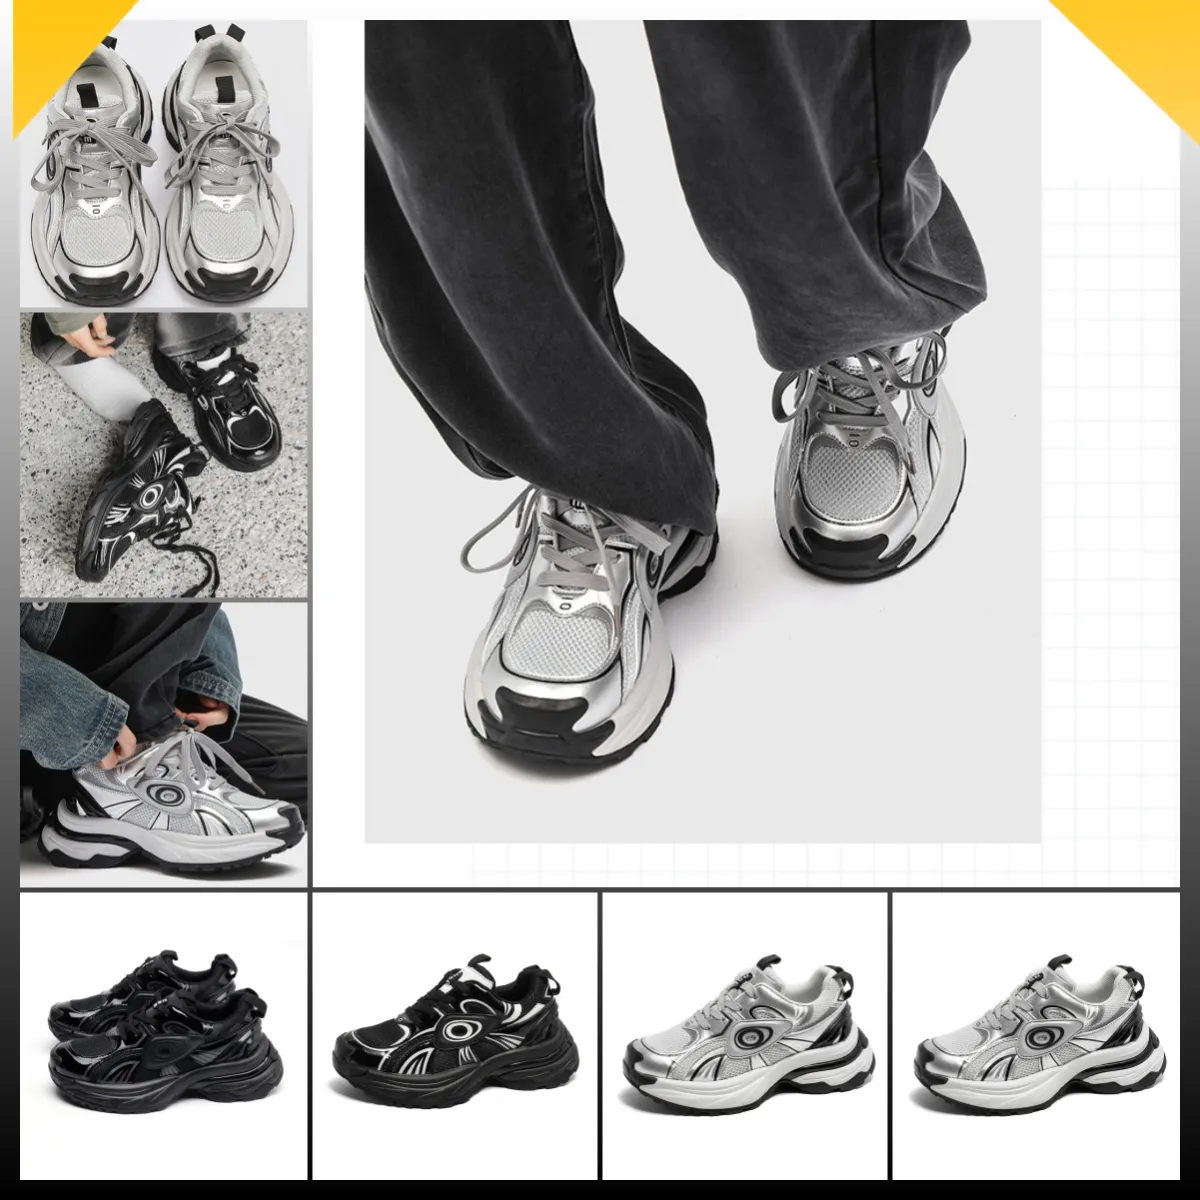 Chaussures de papa à semelles épaisses populaires Femmes Nouvelles chaussures décontractées de Chine-Chic Sneakers à lacets blancs baskets à quatre styles